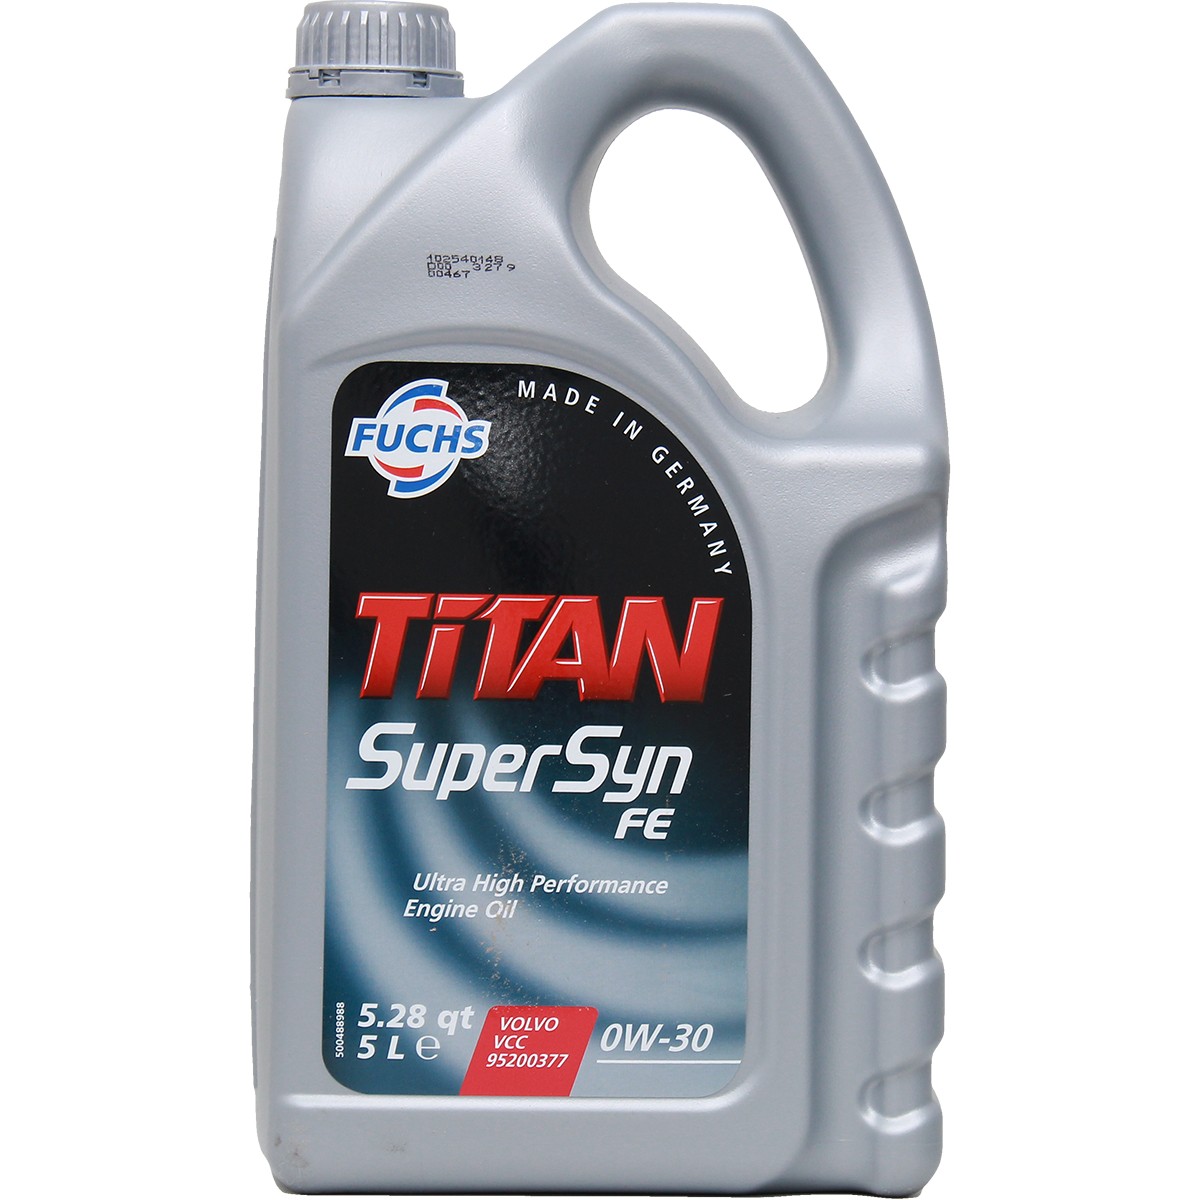 Buy Motor oil FUCHS petrol 601425356 TITAN, Supersyn FE 0W-30, 5l